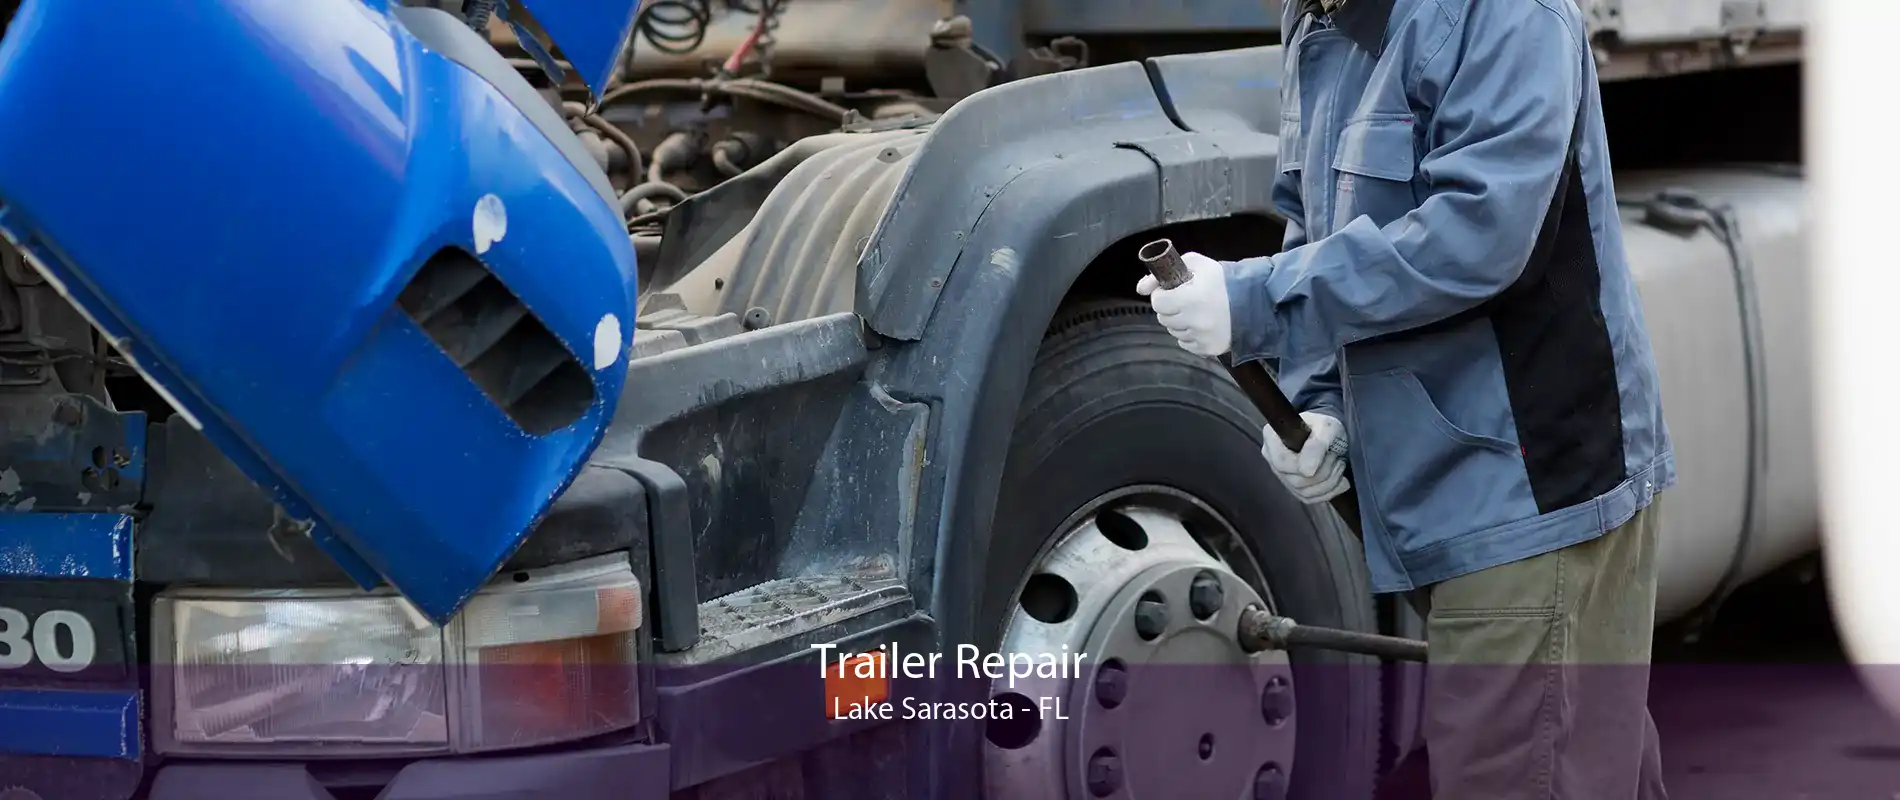 Trailer Repair Lake Sarasota - FL